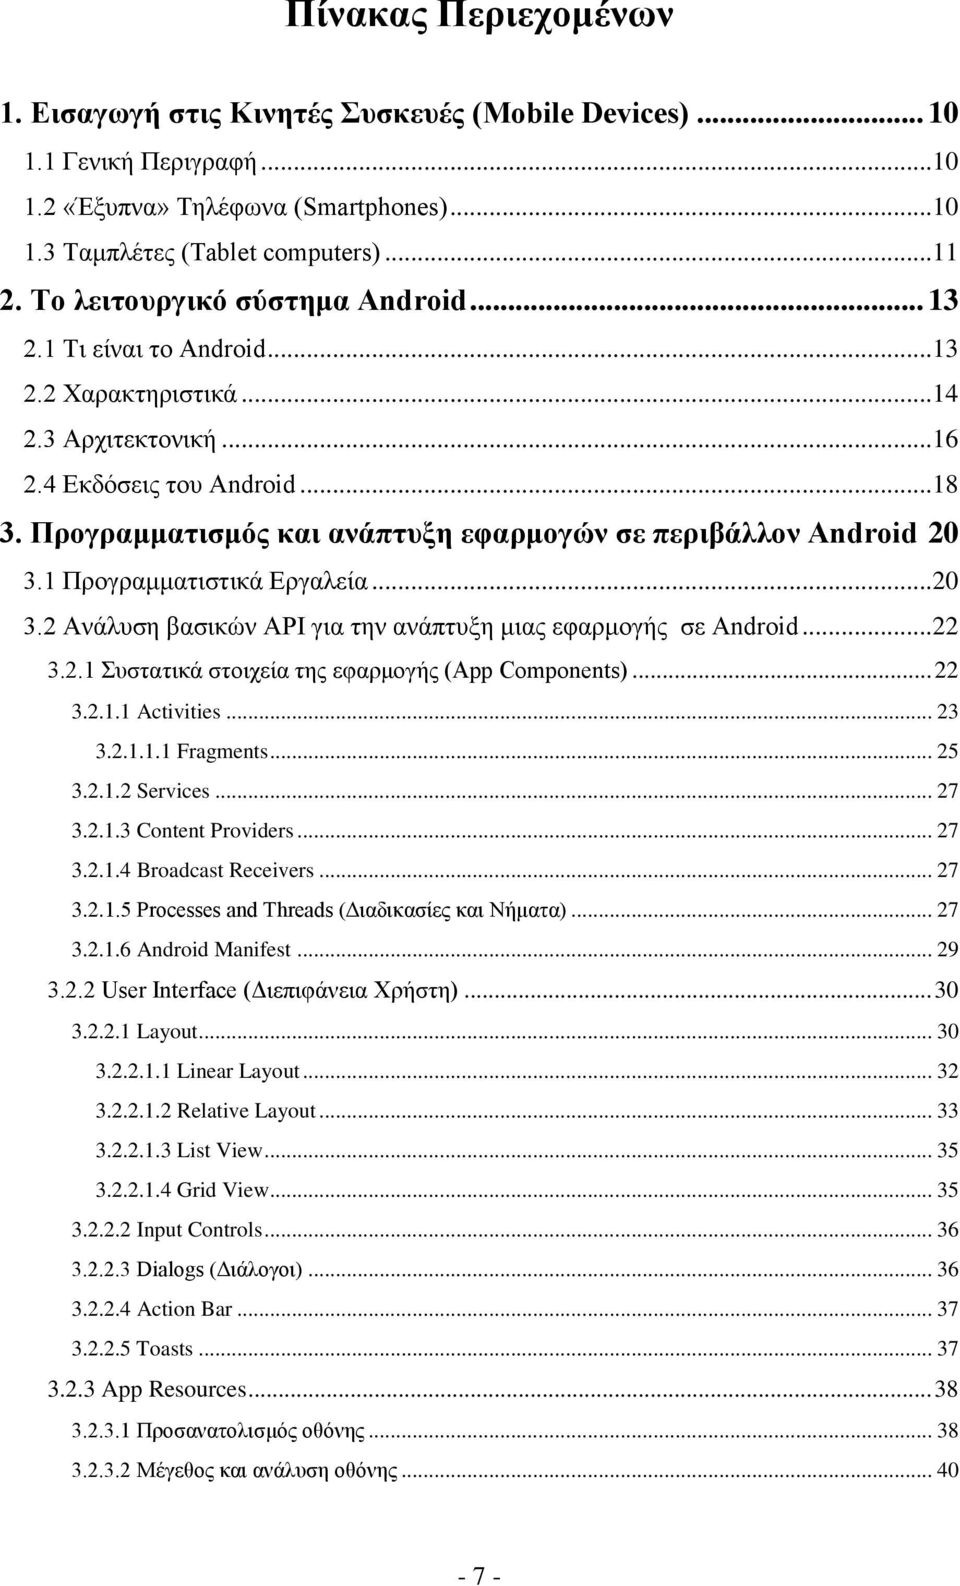 Προγραμματισμός και ανάπτυξη εφαρμογών σε περιβάλλον Android 20 3.1 Προγραμματιστικά Εργαλεία... 20 3.2 Ανάλυση βασικών API για την ανάπτυξη μιας εφαρμογής σε Android... 22 3.2.1 Συστατικά στοιχεία της εφαρμογής (App Components).